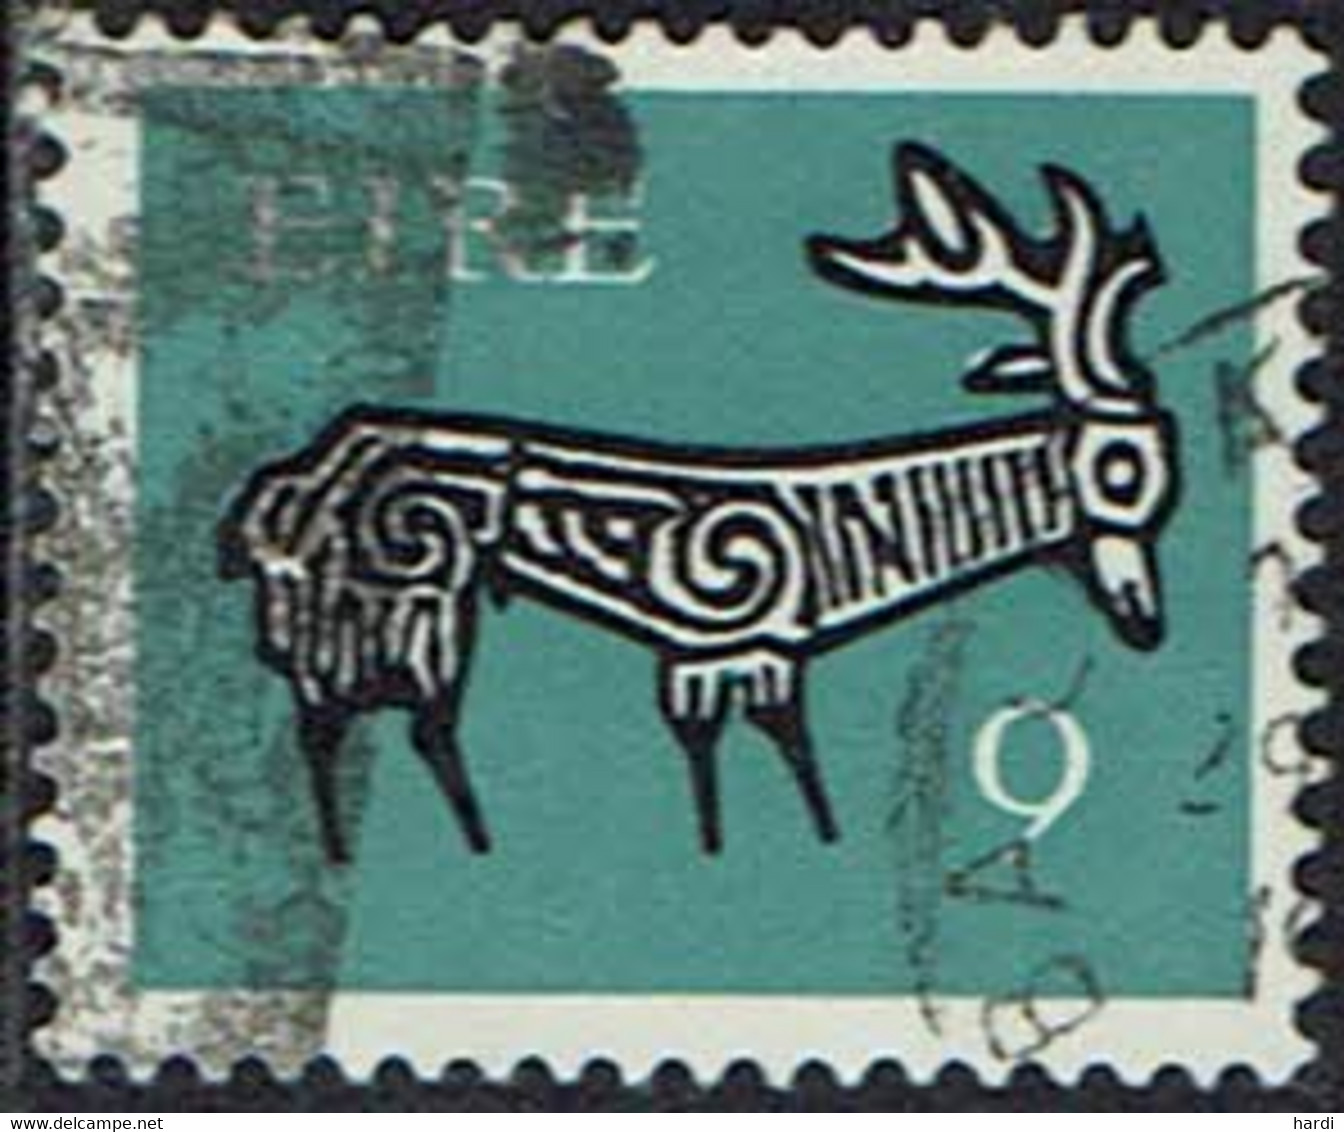 Irland 1971, MiNr 261ZA, Gestempelt - Usados